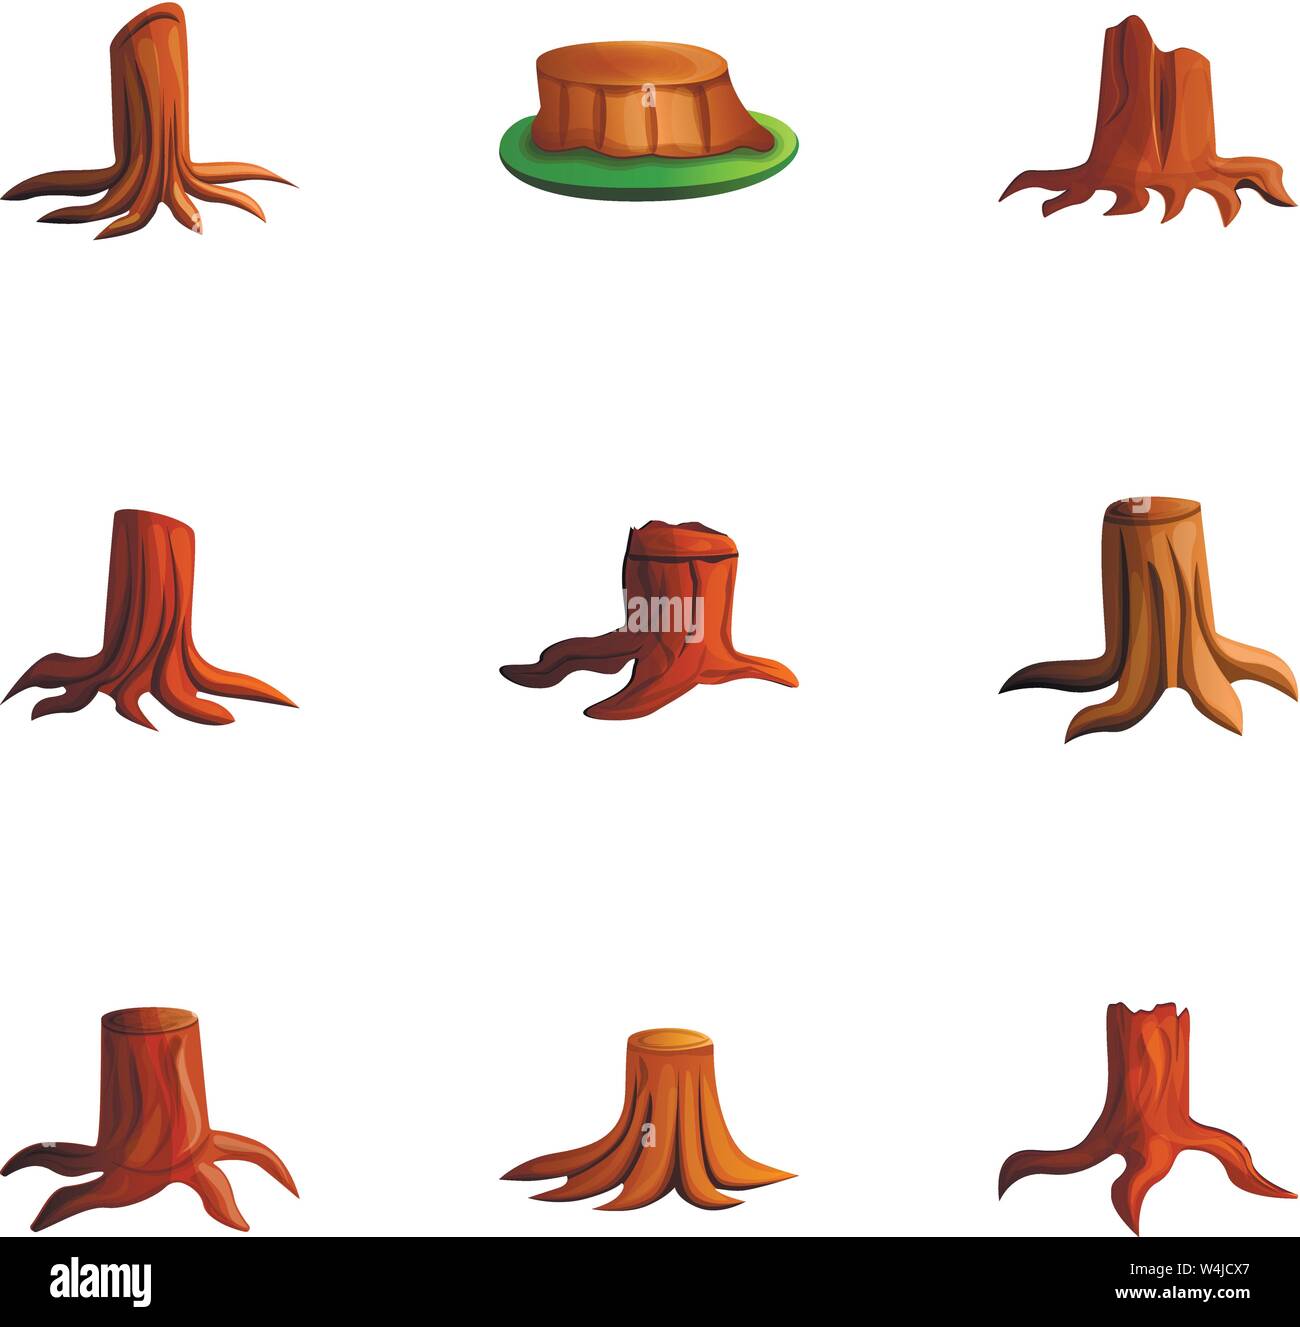 Holz stumpf Icon Set. Cartoon Set von 9 Holz stumpf Vector Icons für Web Design auf weißem Hintergrund Stock Vektor